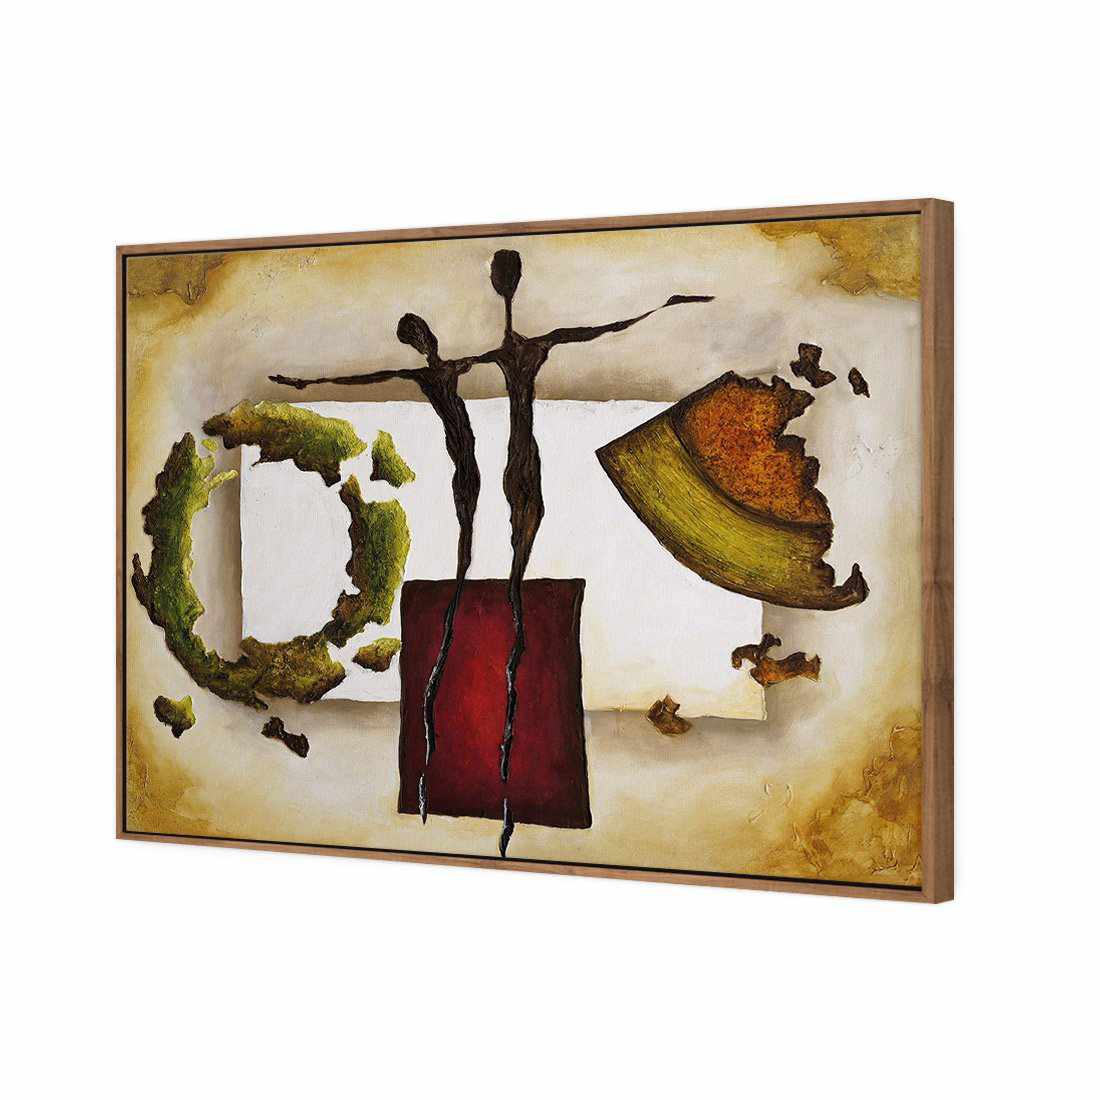 Balancing Puzzle Canvas Art-Canvas-Wall Art Designs-45x30cm-Canvas - Natural Frame-Wall Art Designs